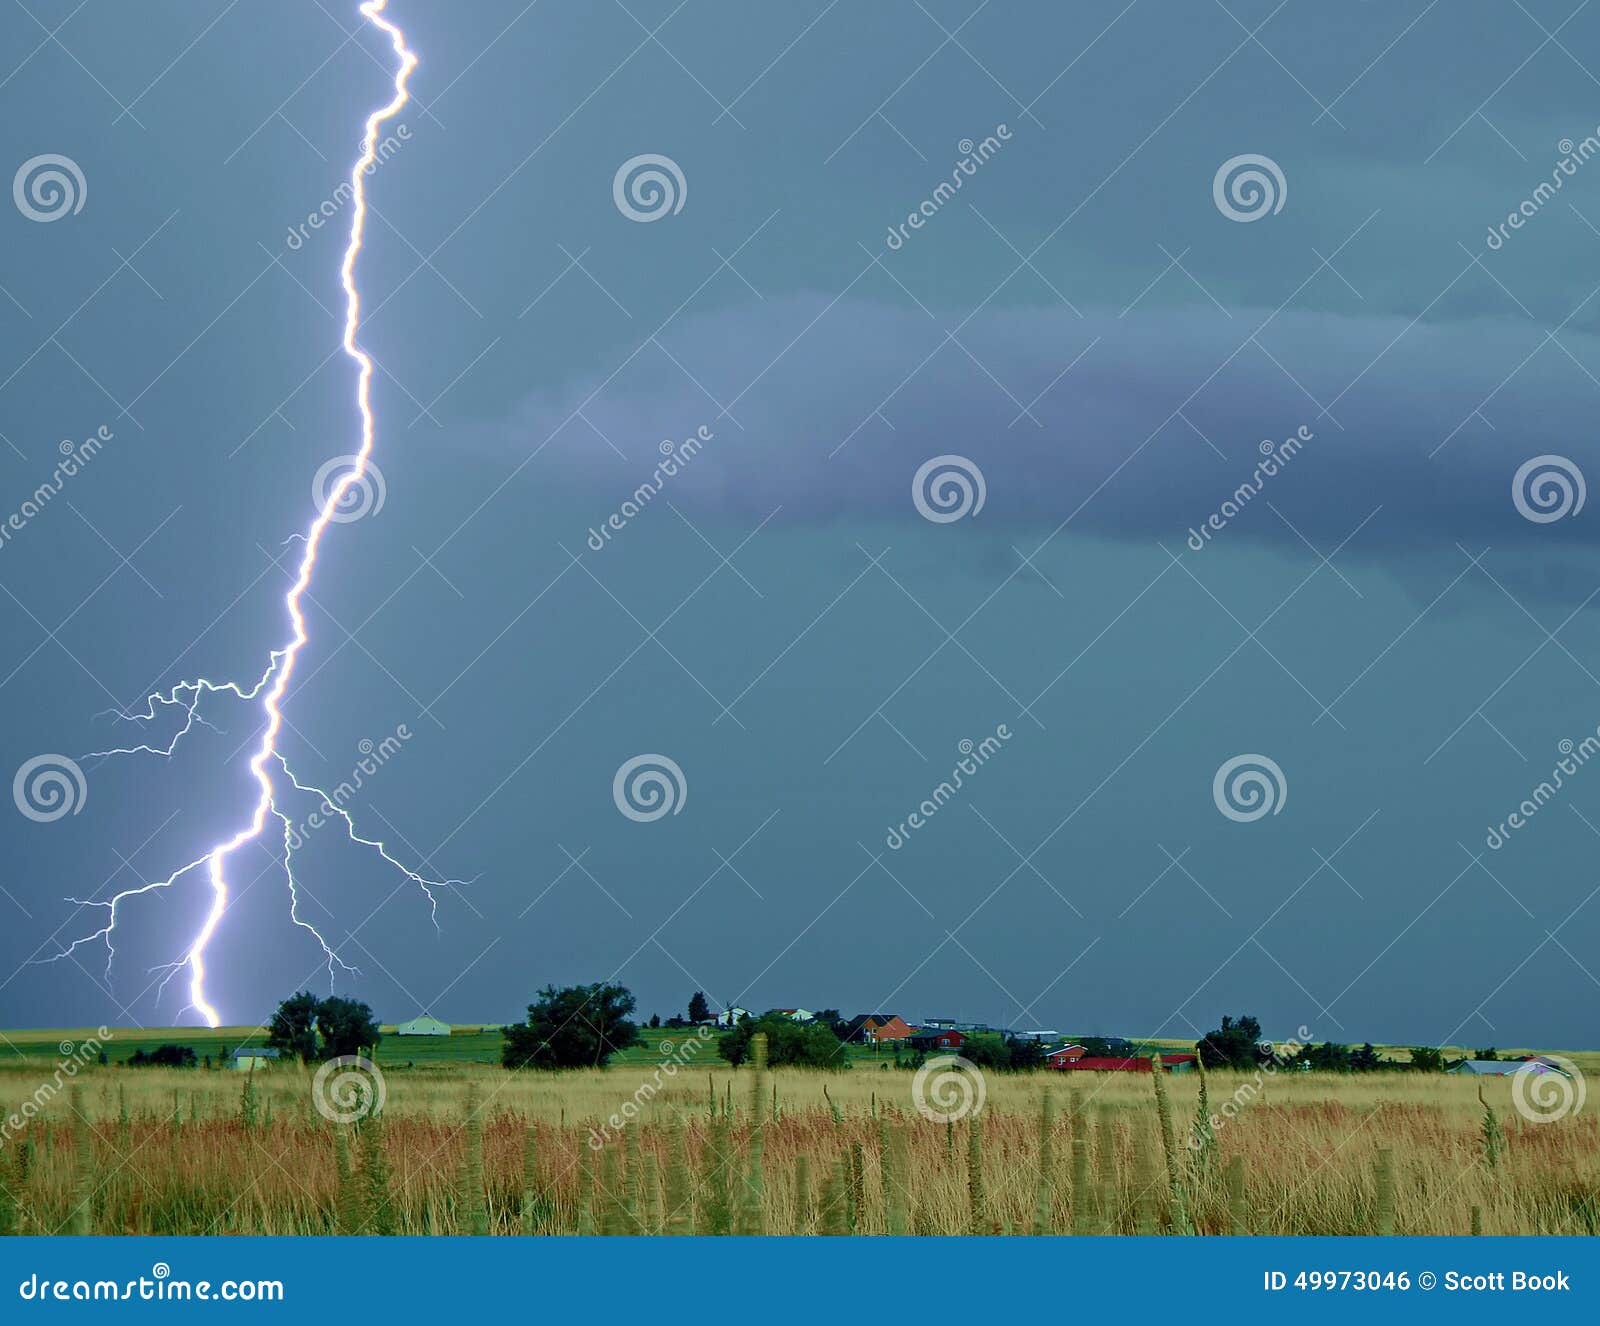 lightning thunderstorm on the prairie